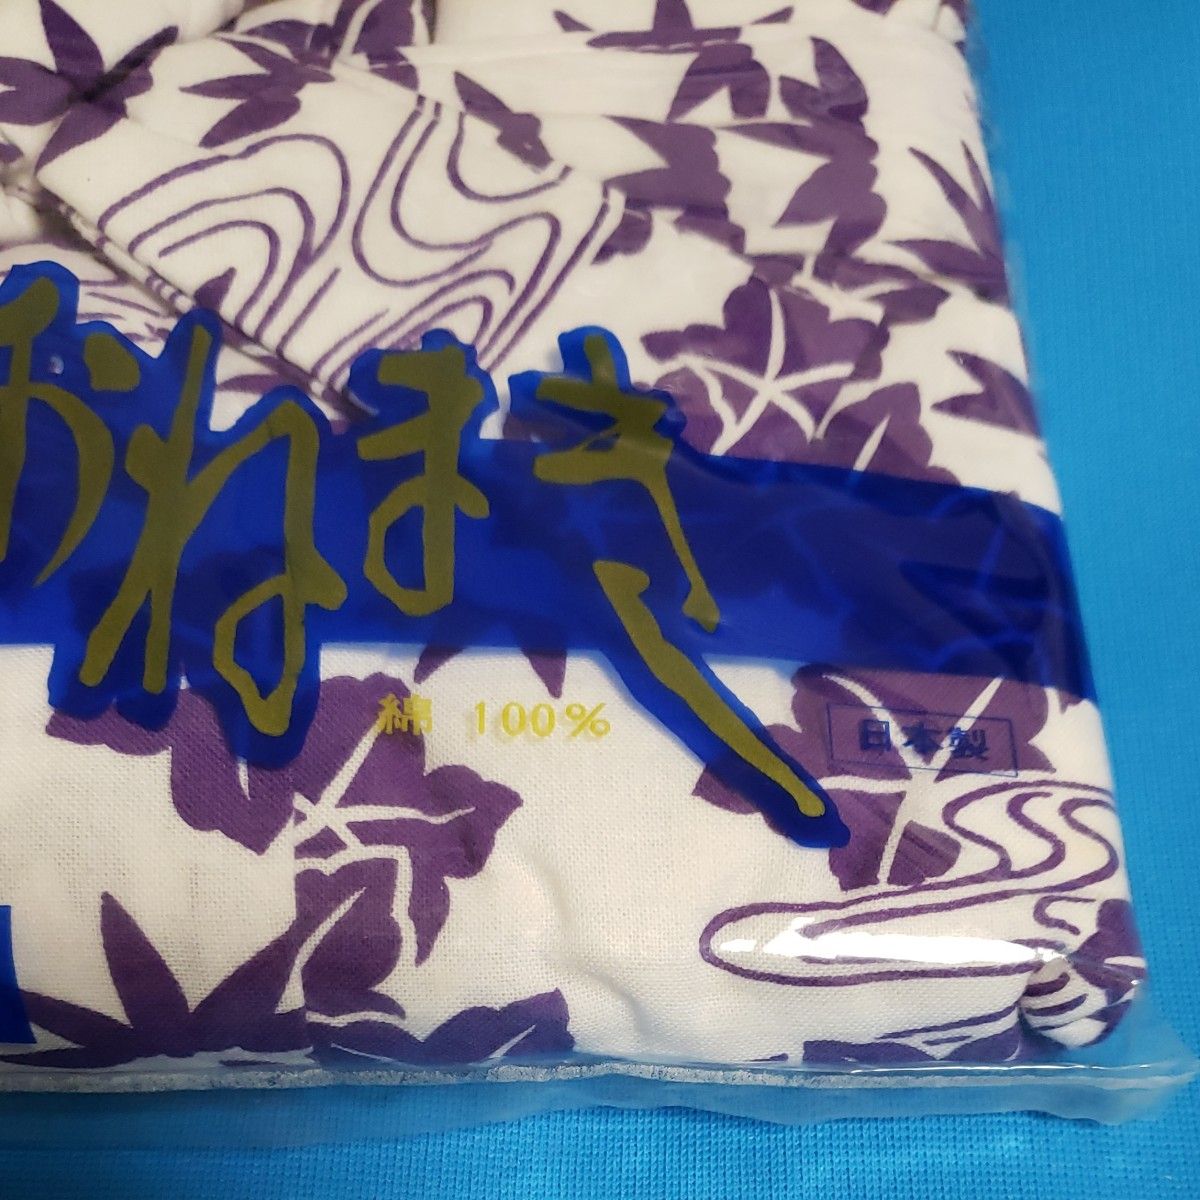 未着用 ガーゼねまき 婦人 L 寝間着 日本製 綿100% ガーゼ 裏地 二重 スケッチ おねまき 白 紫 浴衣 病院 介護 新品